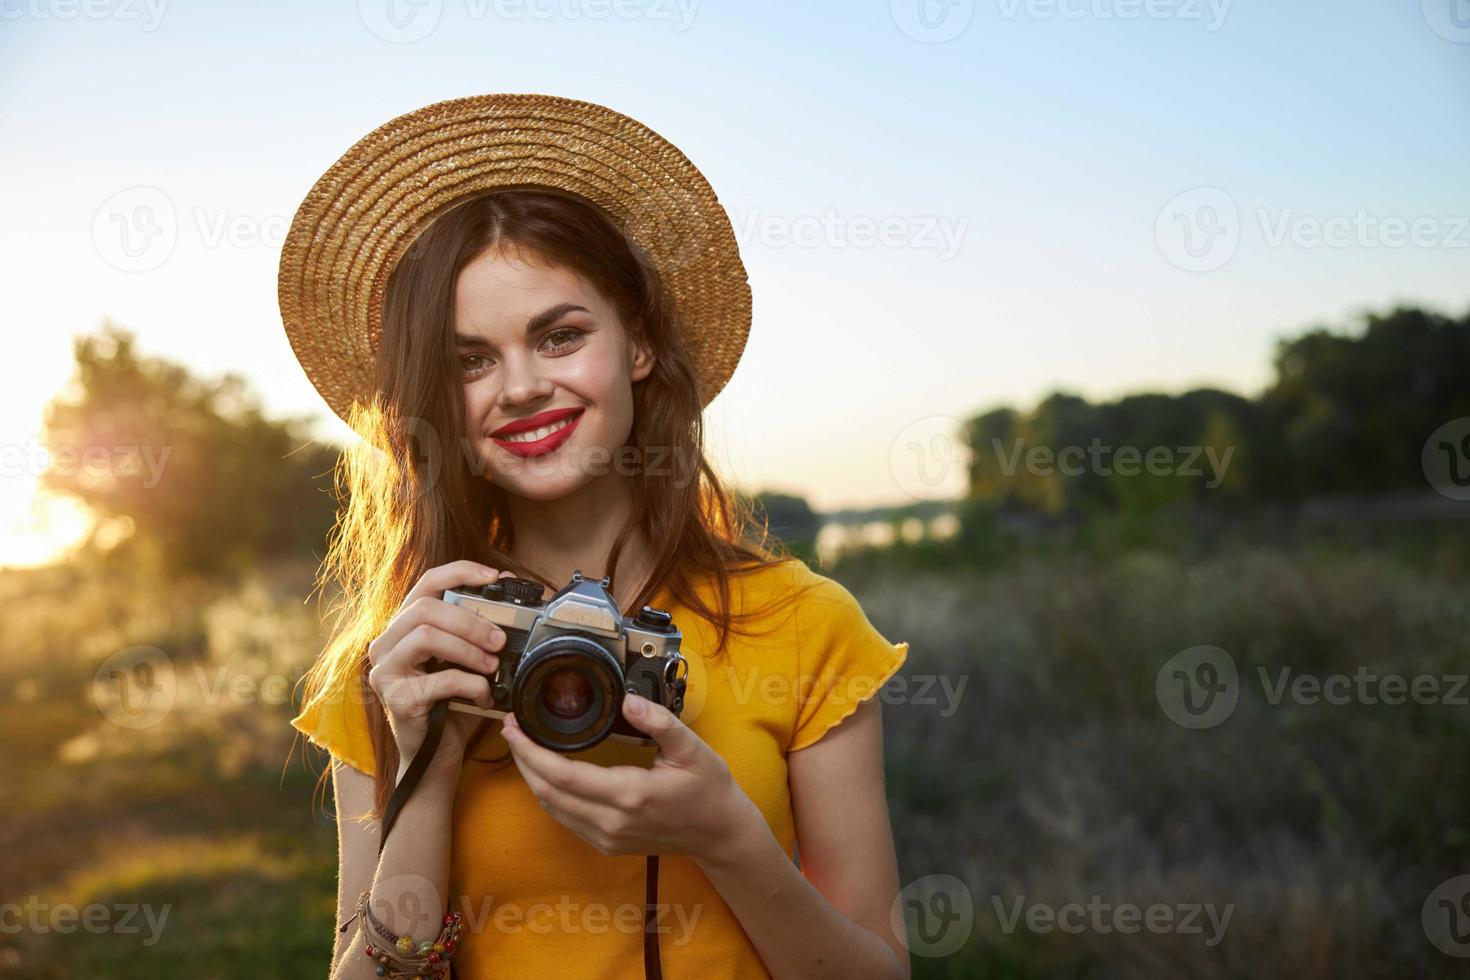 kvinna fotograf kamera i händer leende röd mun hatt attraktiv se natur foto